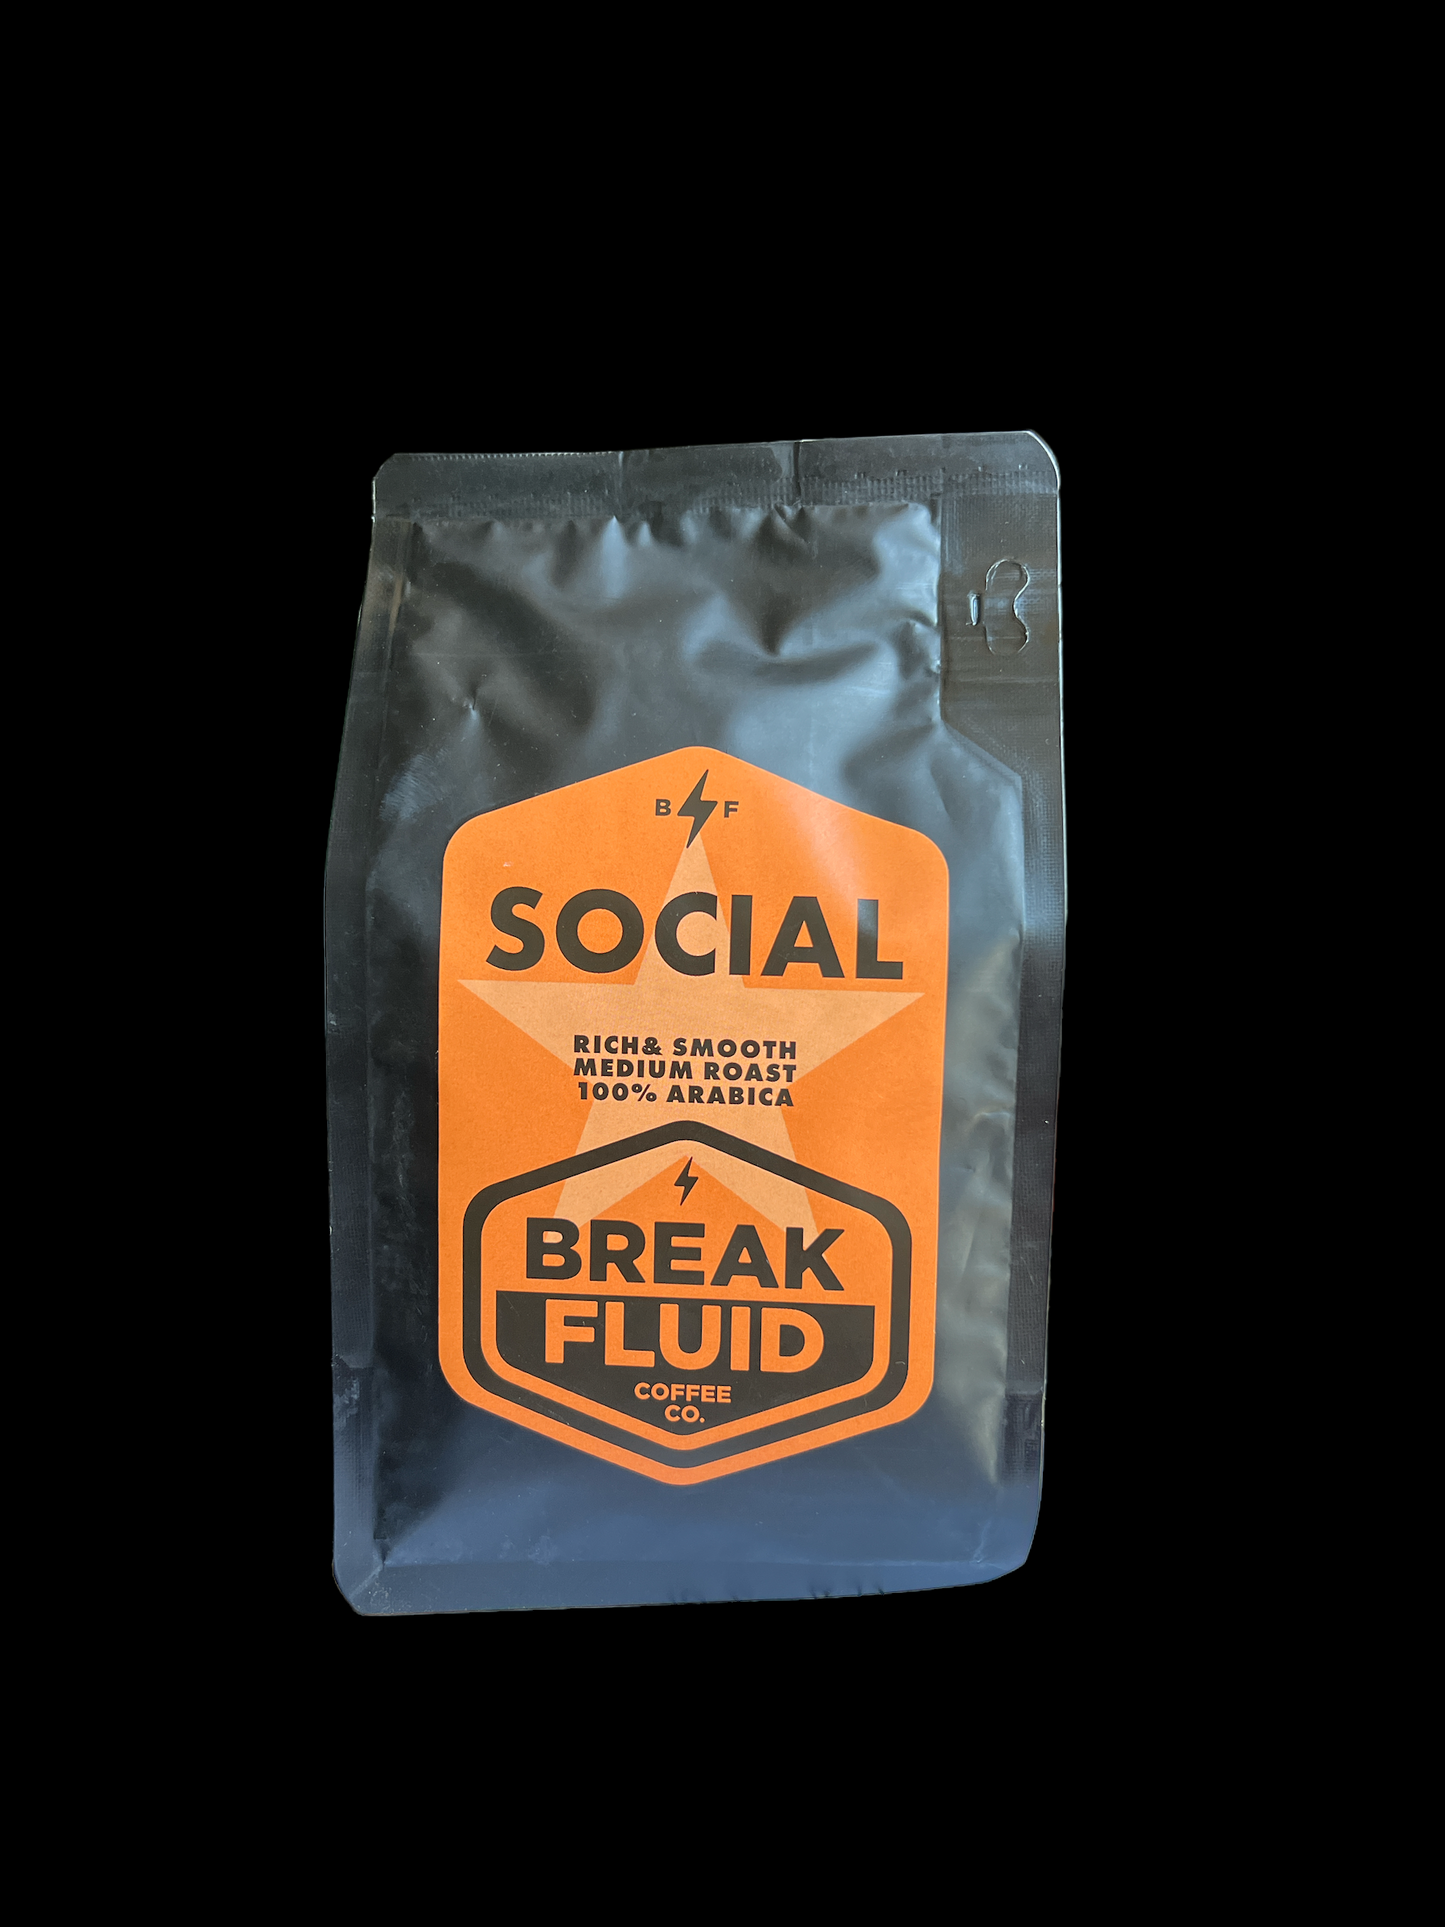 Silverback Break Fluid Coffee - Social